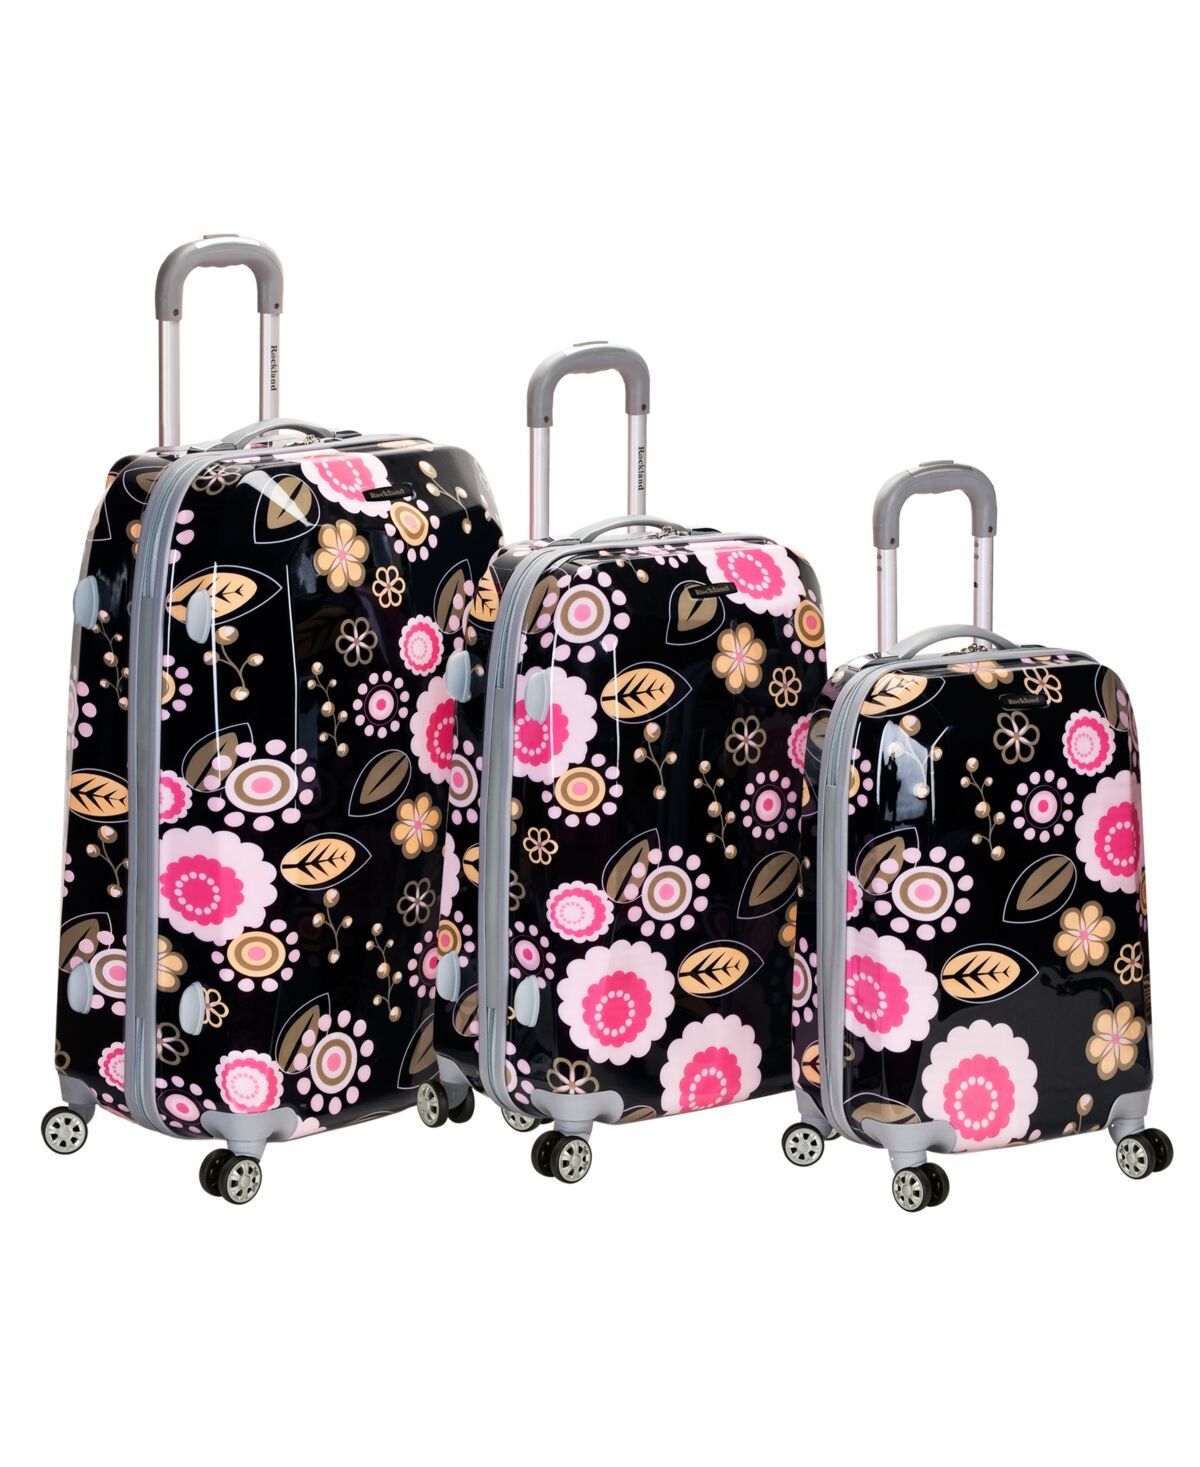 Rockland 3-Pc. Hardside Luggage Set - Pink